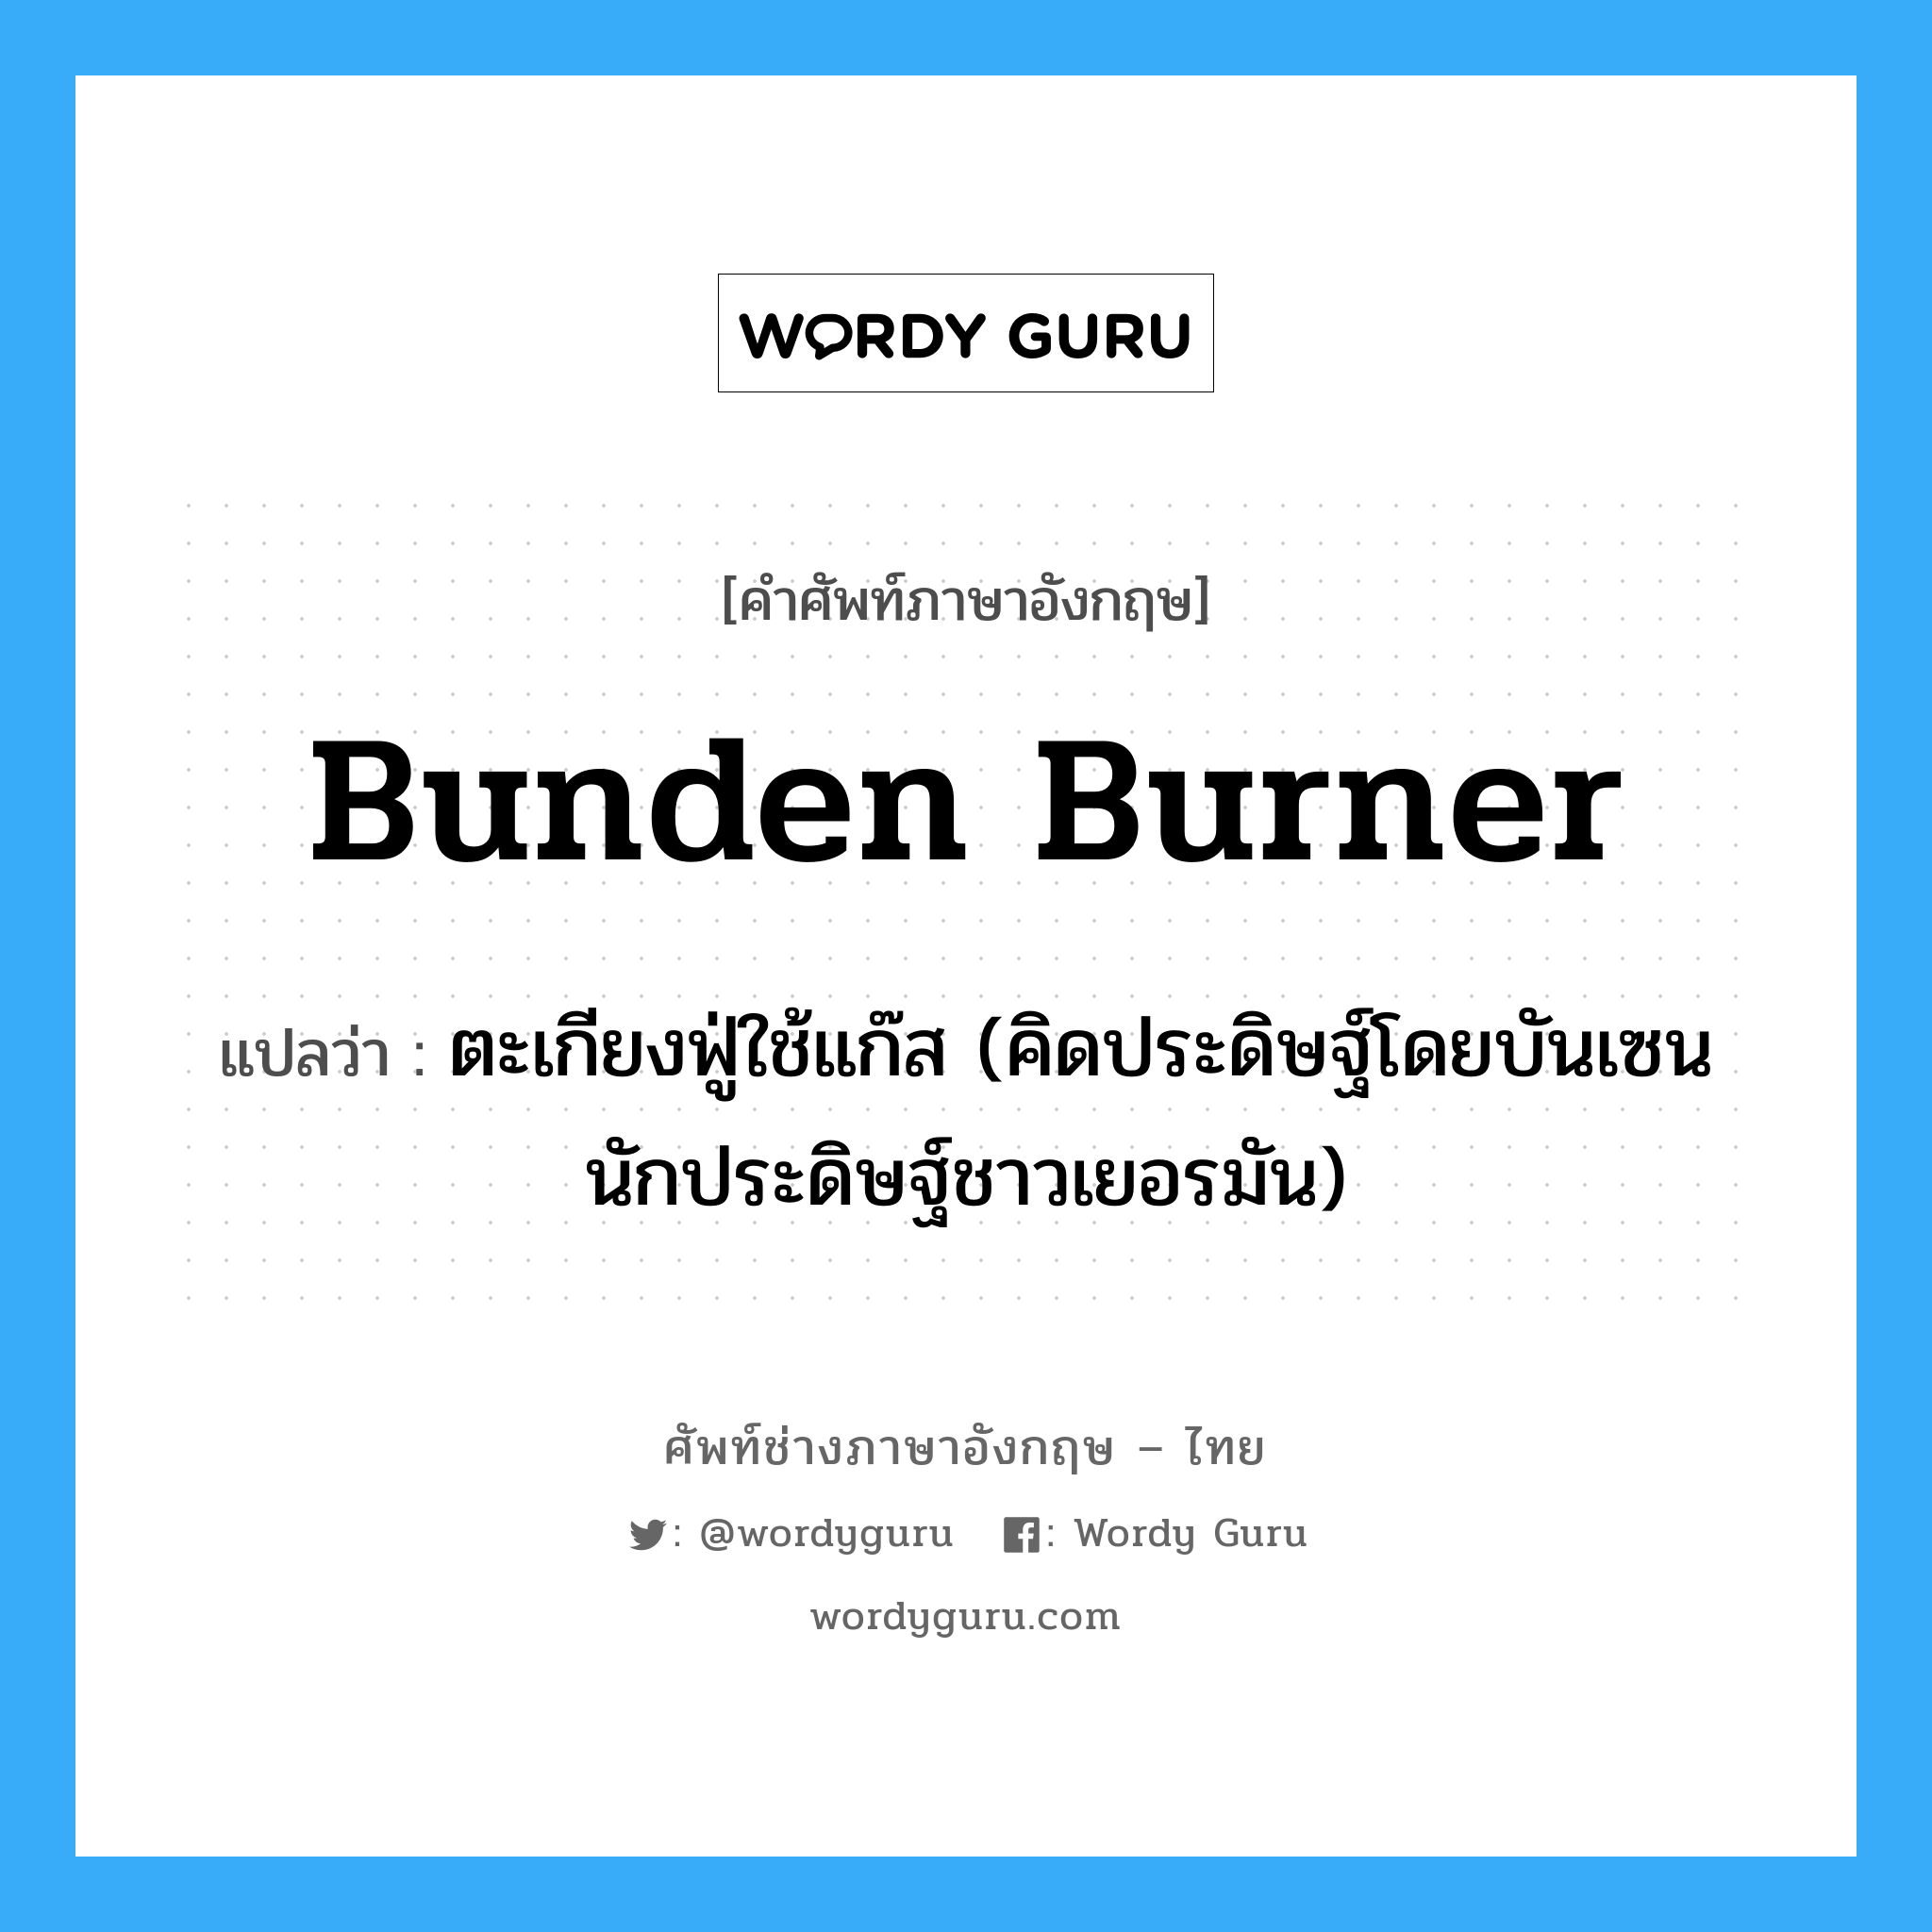 Bunden burner แปลว่า?, คำศัพท์ช่างภาษาอังกฤษ - ไทย Bunden burner คำศัพท์ภาษาอังกฤษ Bunden burner แปลว่า ตะเกียงฟู่ใช้แก๊ส (คิดประดิษฐ์โดยบันเซน นักประดิษฐ์ชาวเยอรมัน)